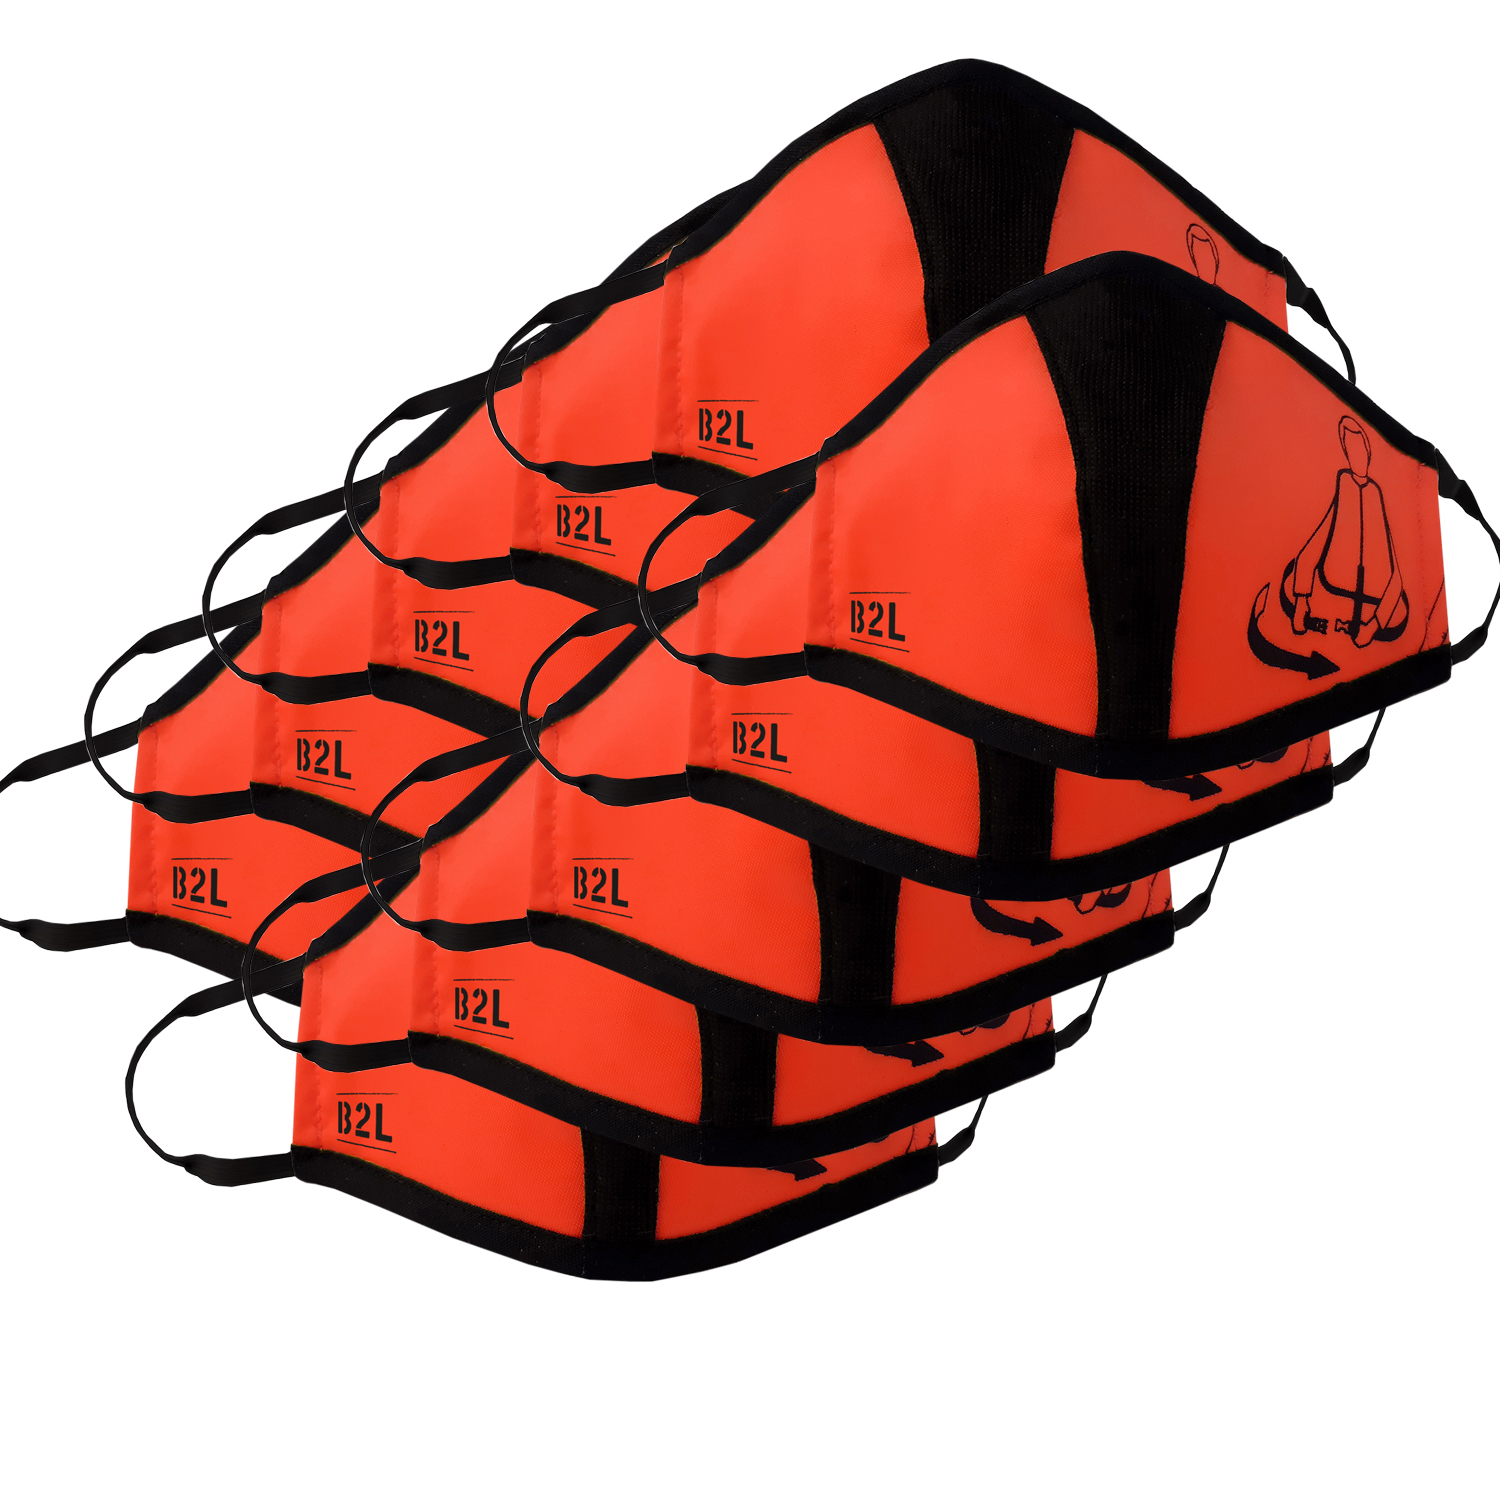 Travel Safe Mask red-orange 10er Pack – Gesichtsmasken 